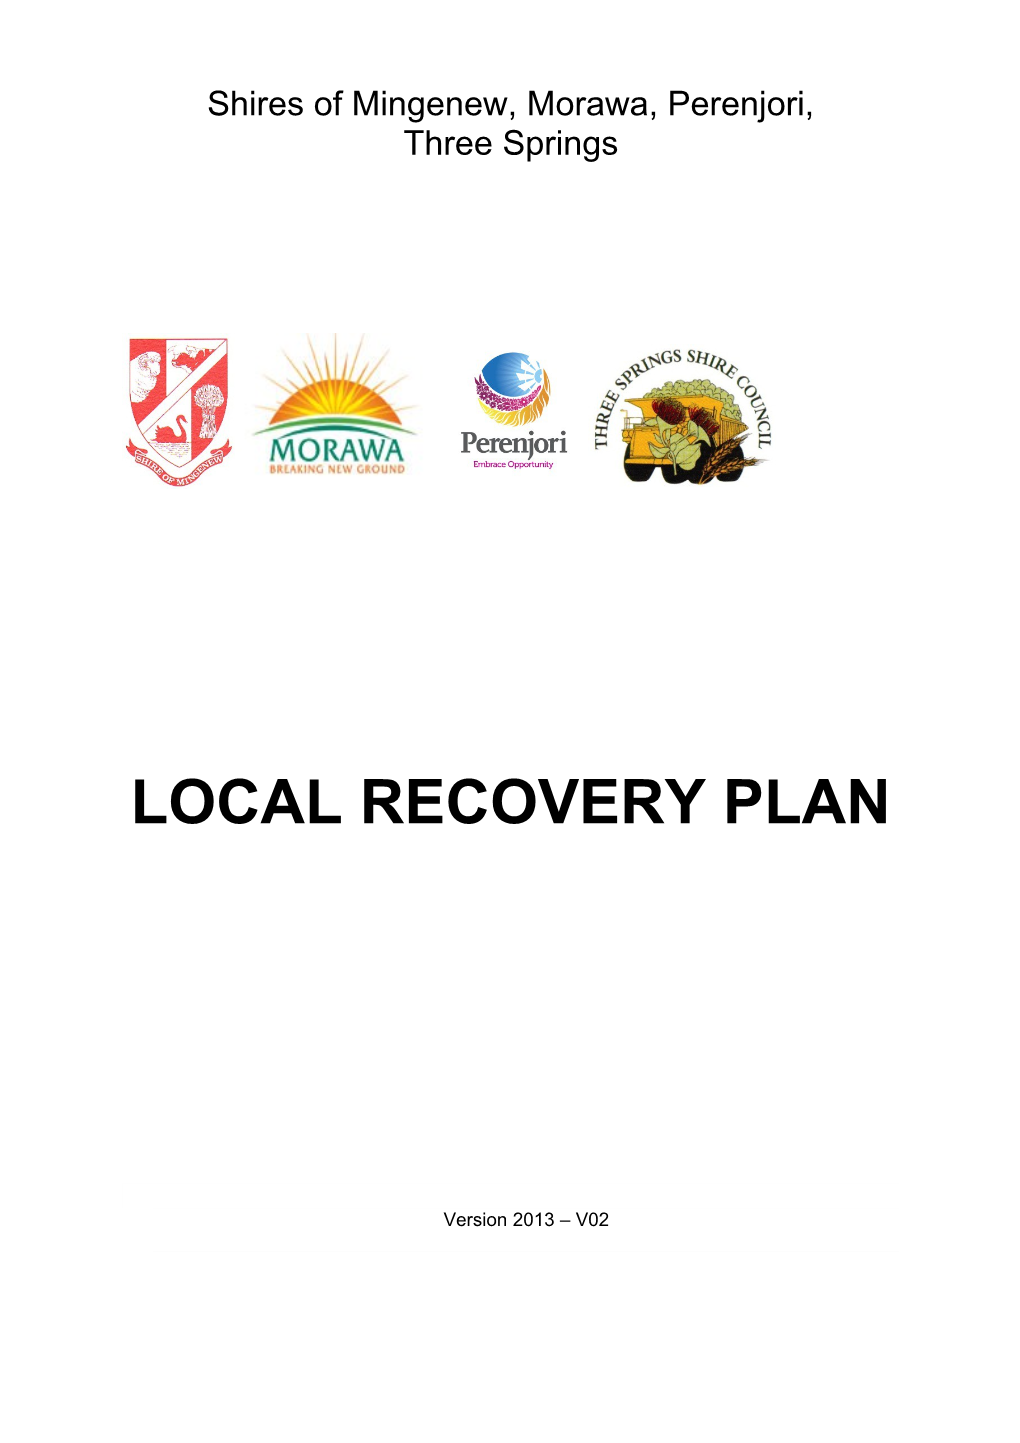 Community Emergency Management Arrangements Guide